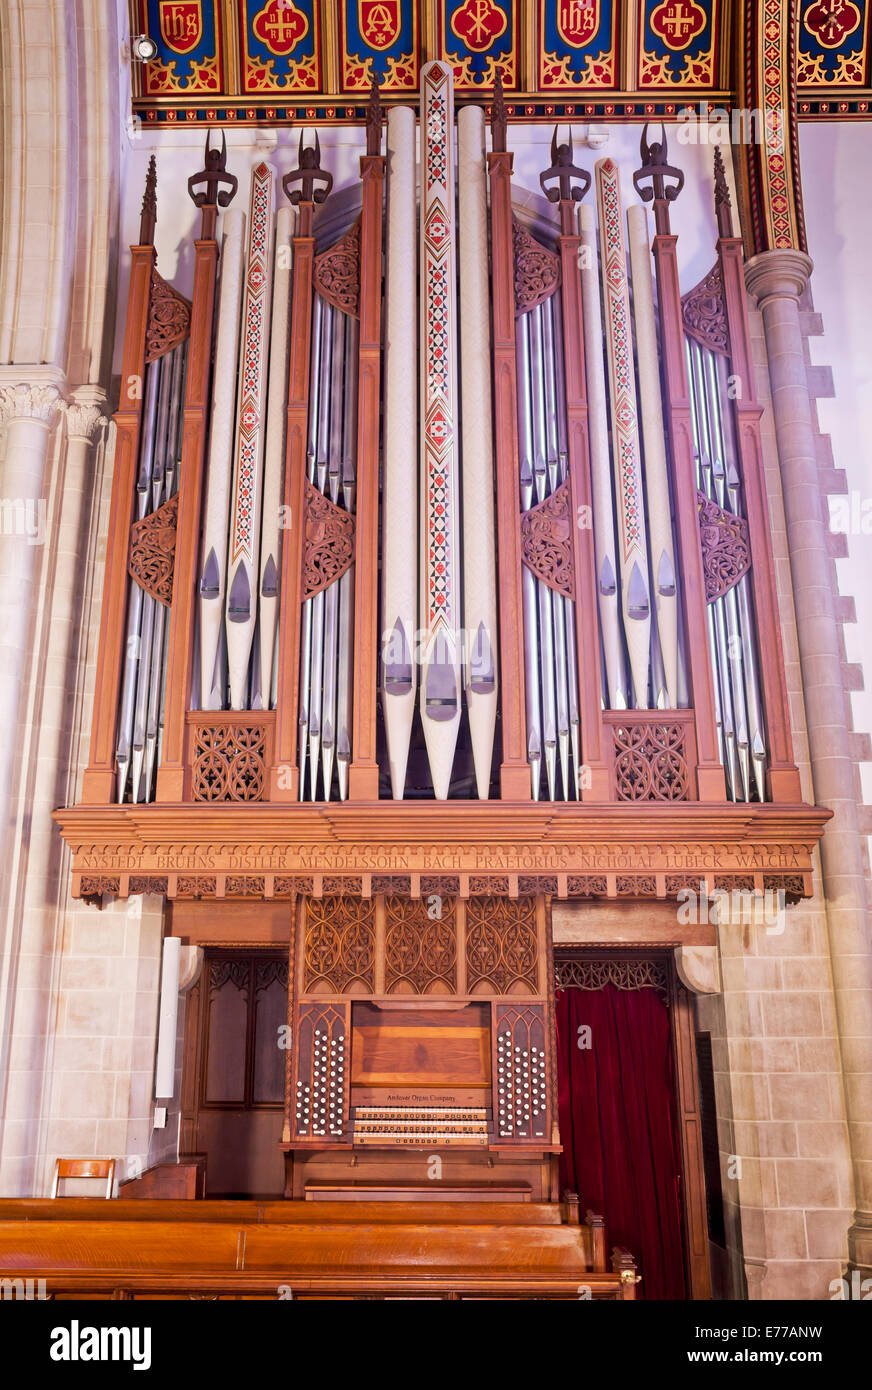 Un organo a canne in una chiesa. Foto Stock